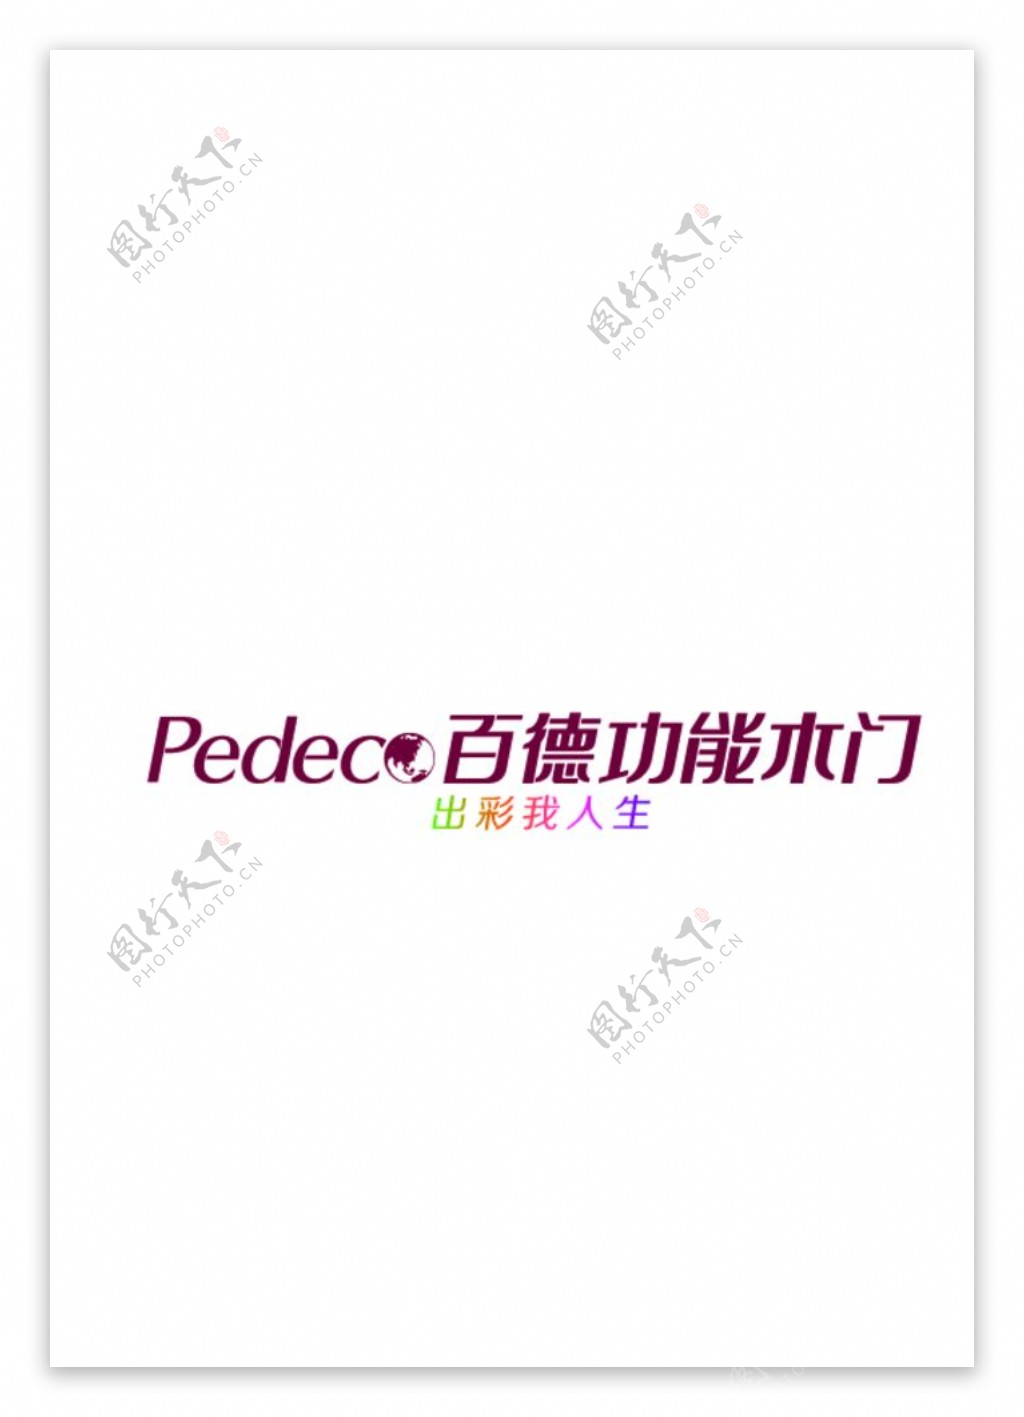 百德木门logo紫色版